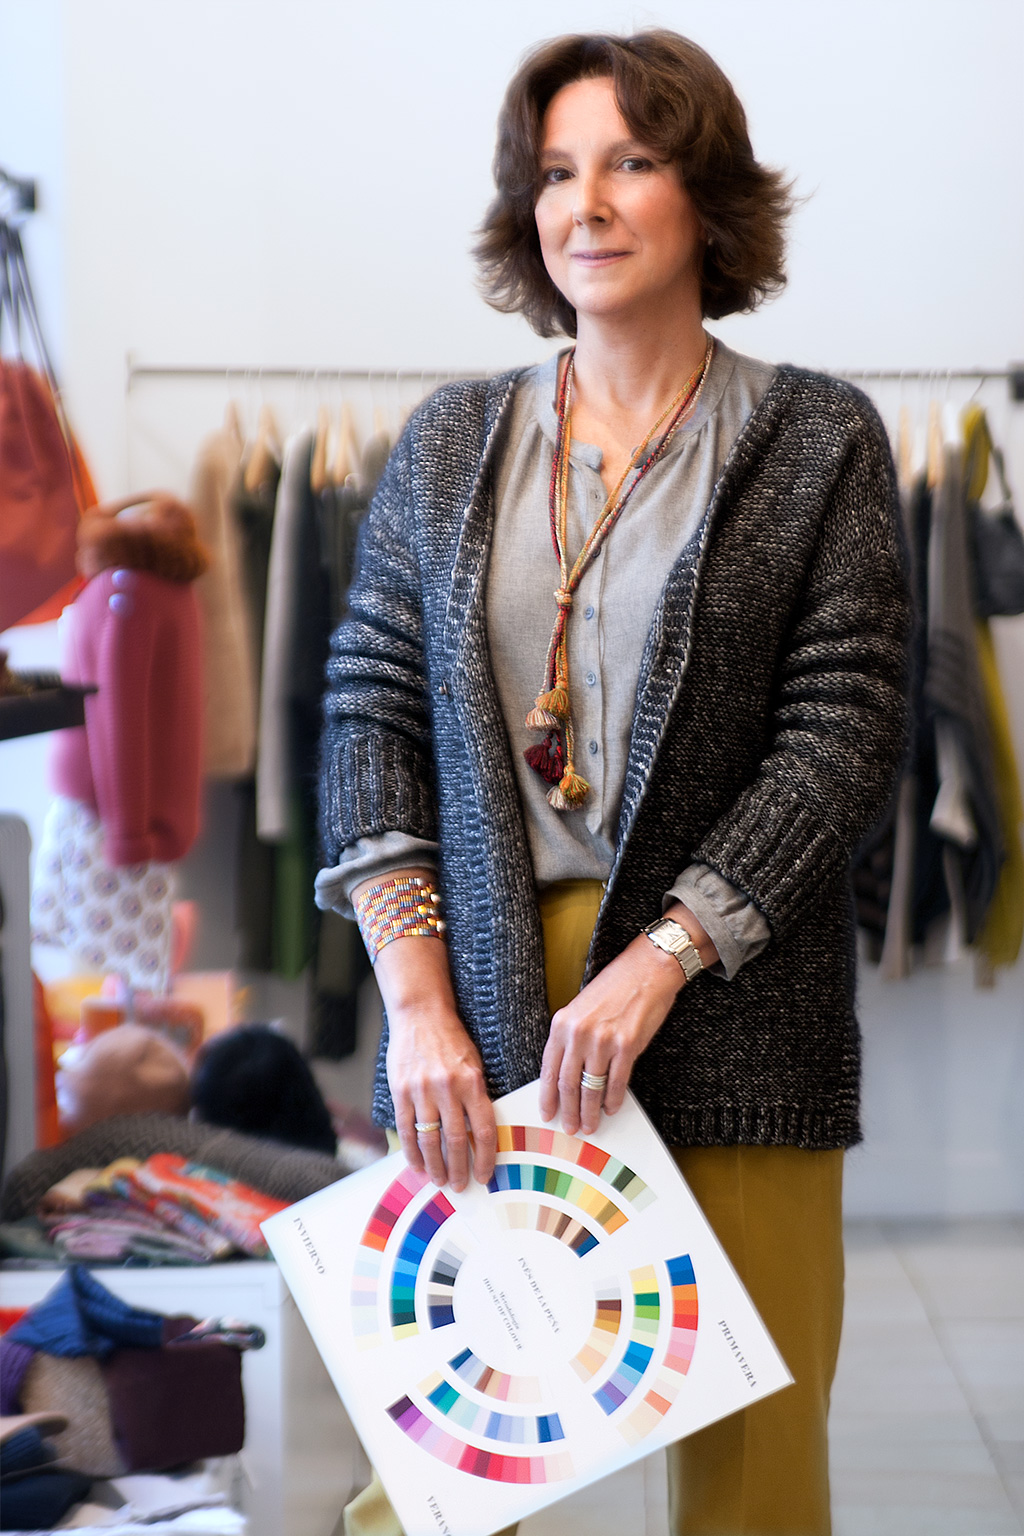 Inés de la Peña, asesora de imagen personal, posando con prendas de la tienda Ocre, situada en el barrio del Antiguo.